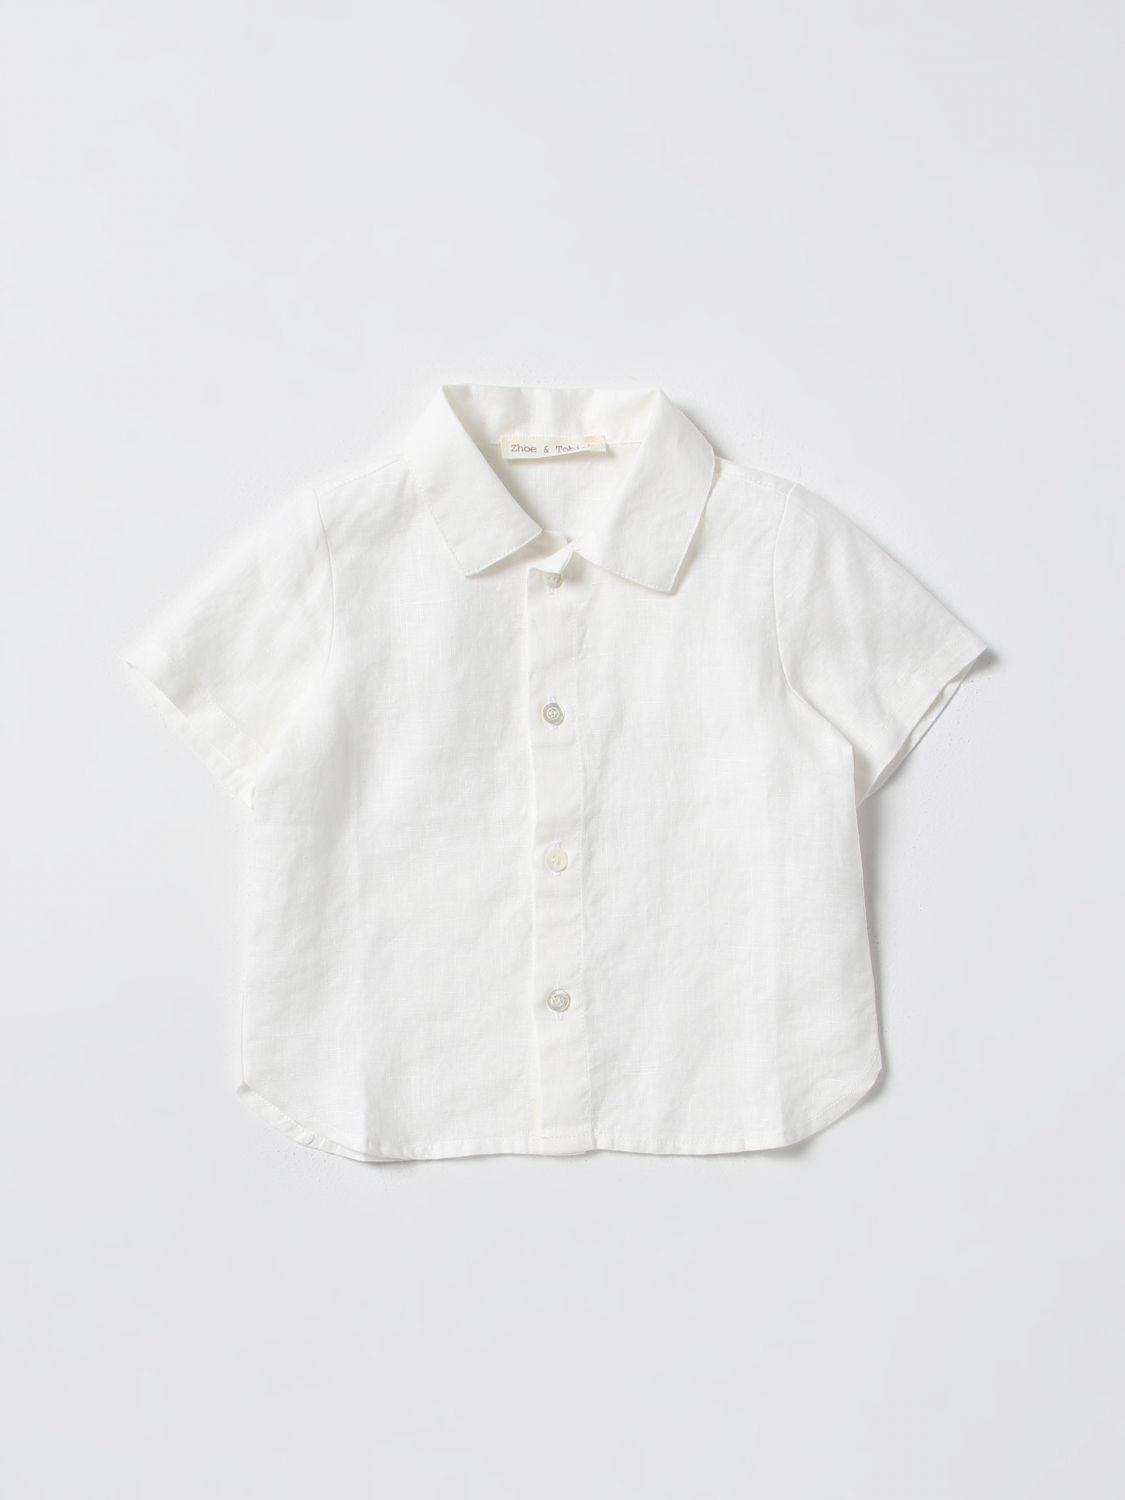 Zhoe & Tobiah Babies' Shirt  Kids Color White